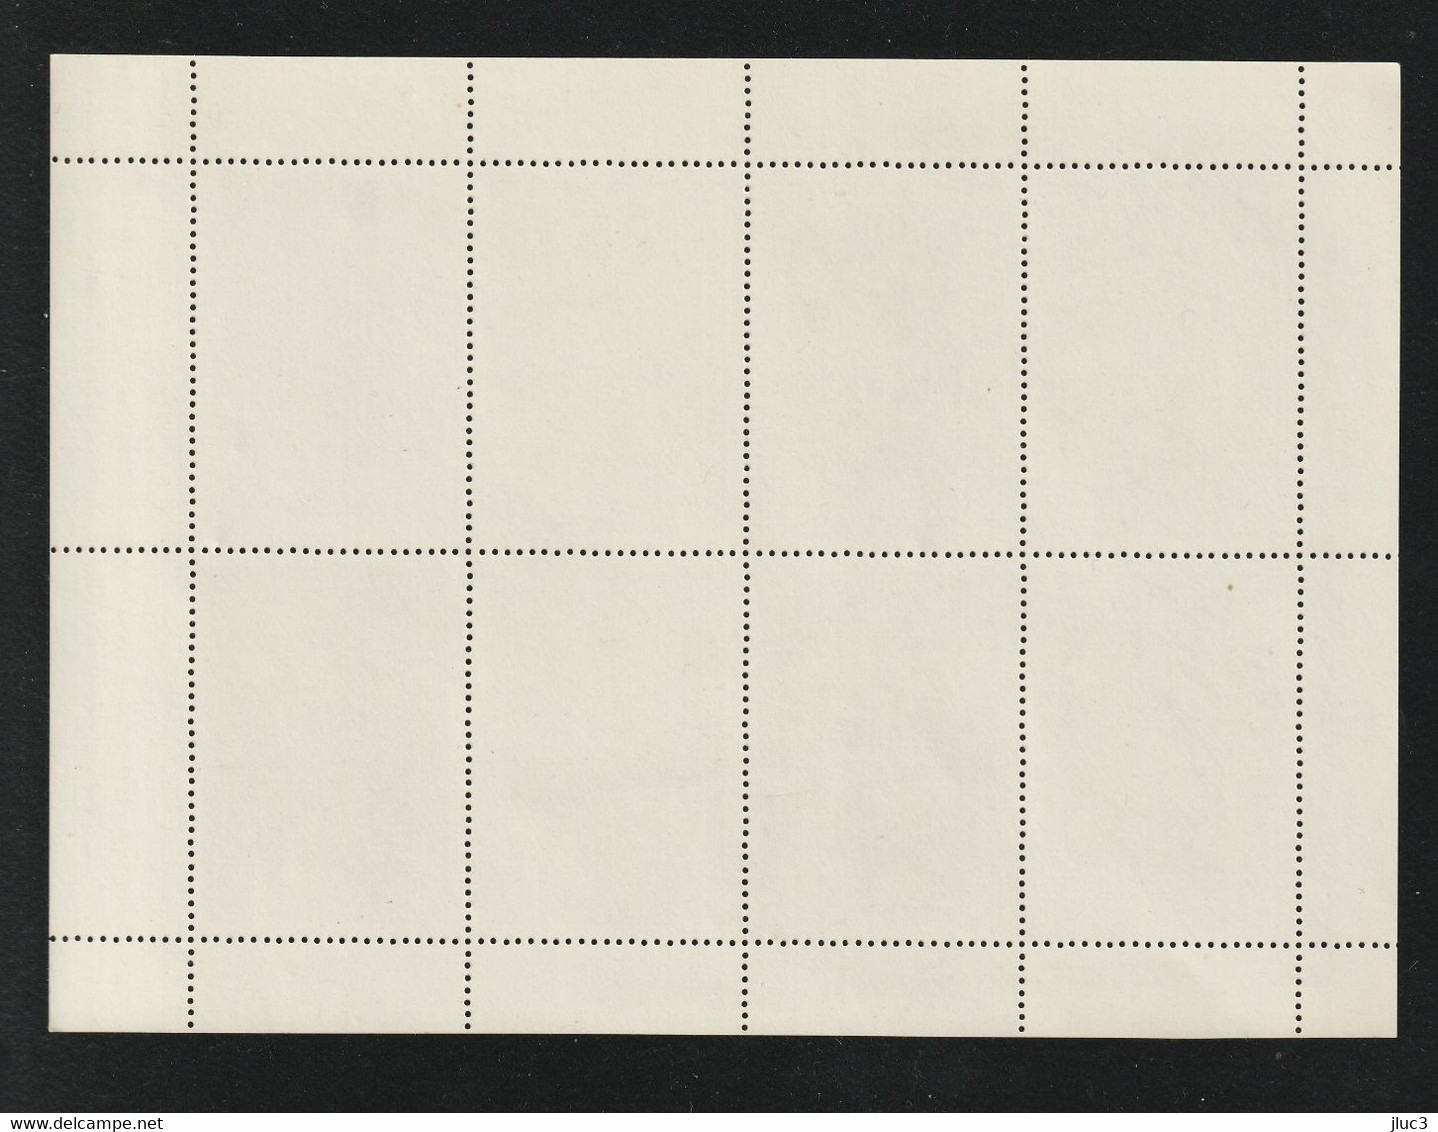 PF4597-01(3) - URSS 1979 - La Jolie SERIE Complète 5 FEUILLES Neuves** De 7 TIMBRES N° 4597 à 4601 (YT) - ART  Artisanat - Hojas Completas